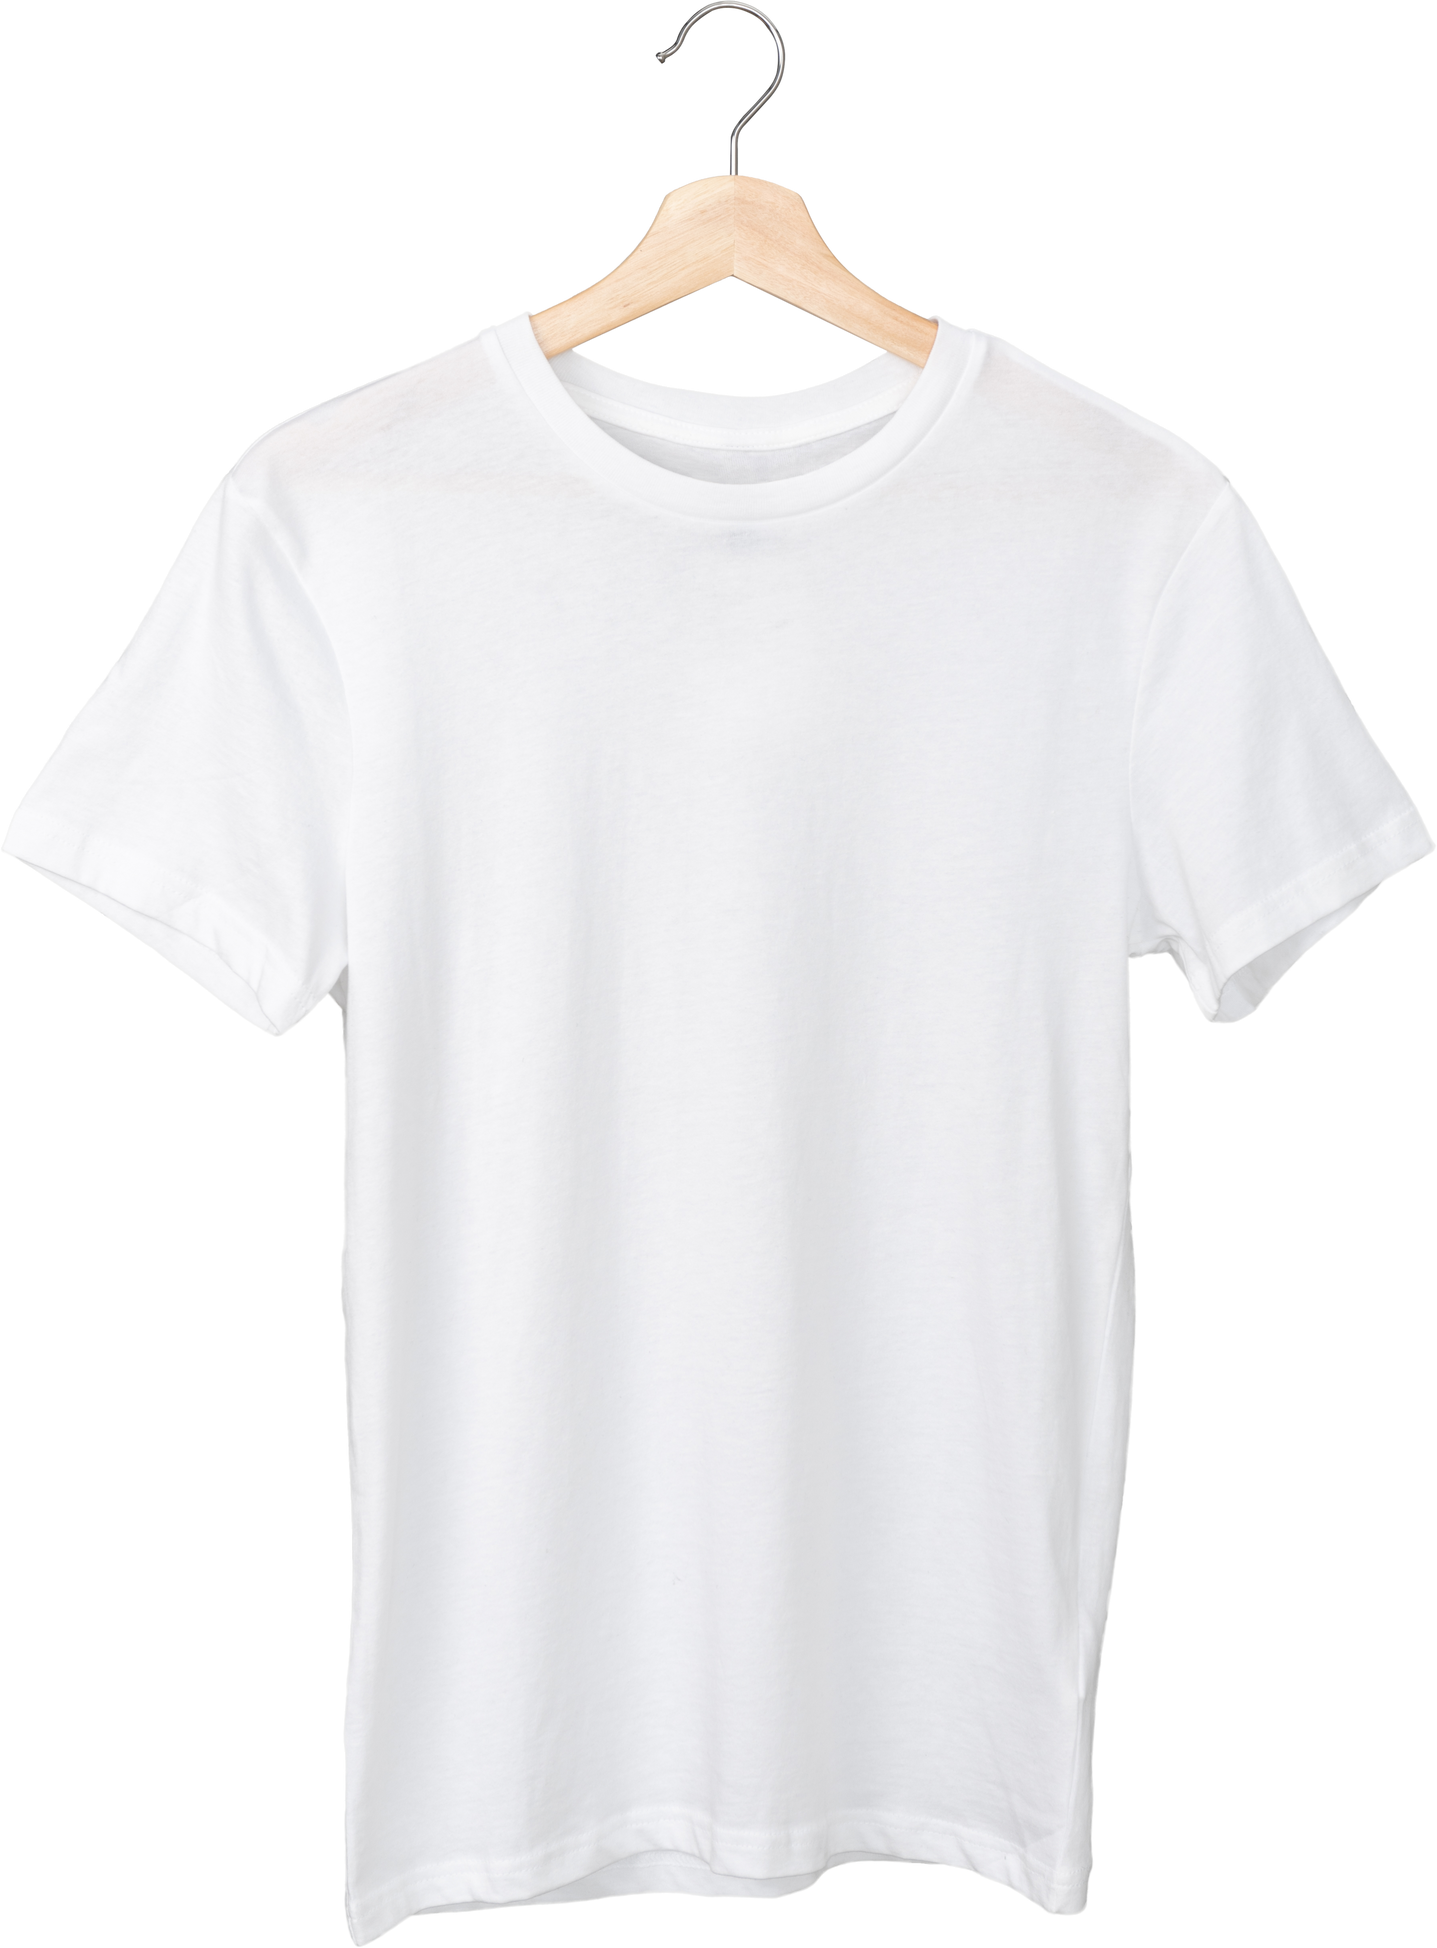 White t-shirt on a hanger